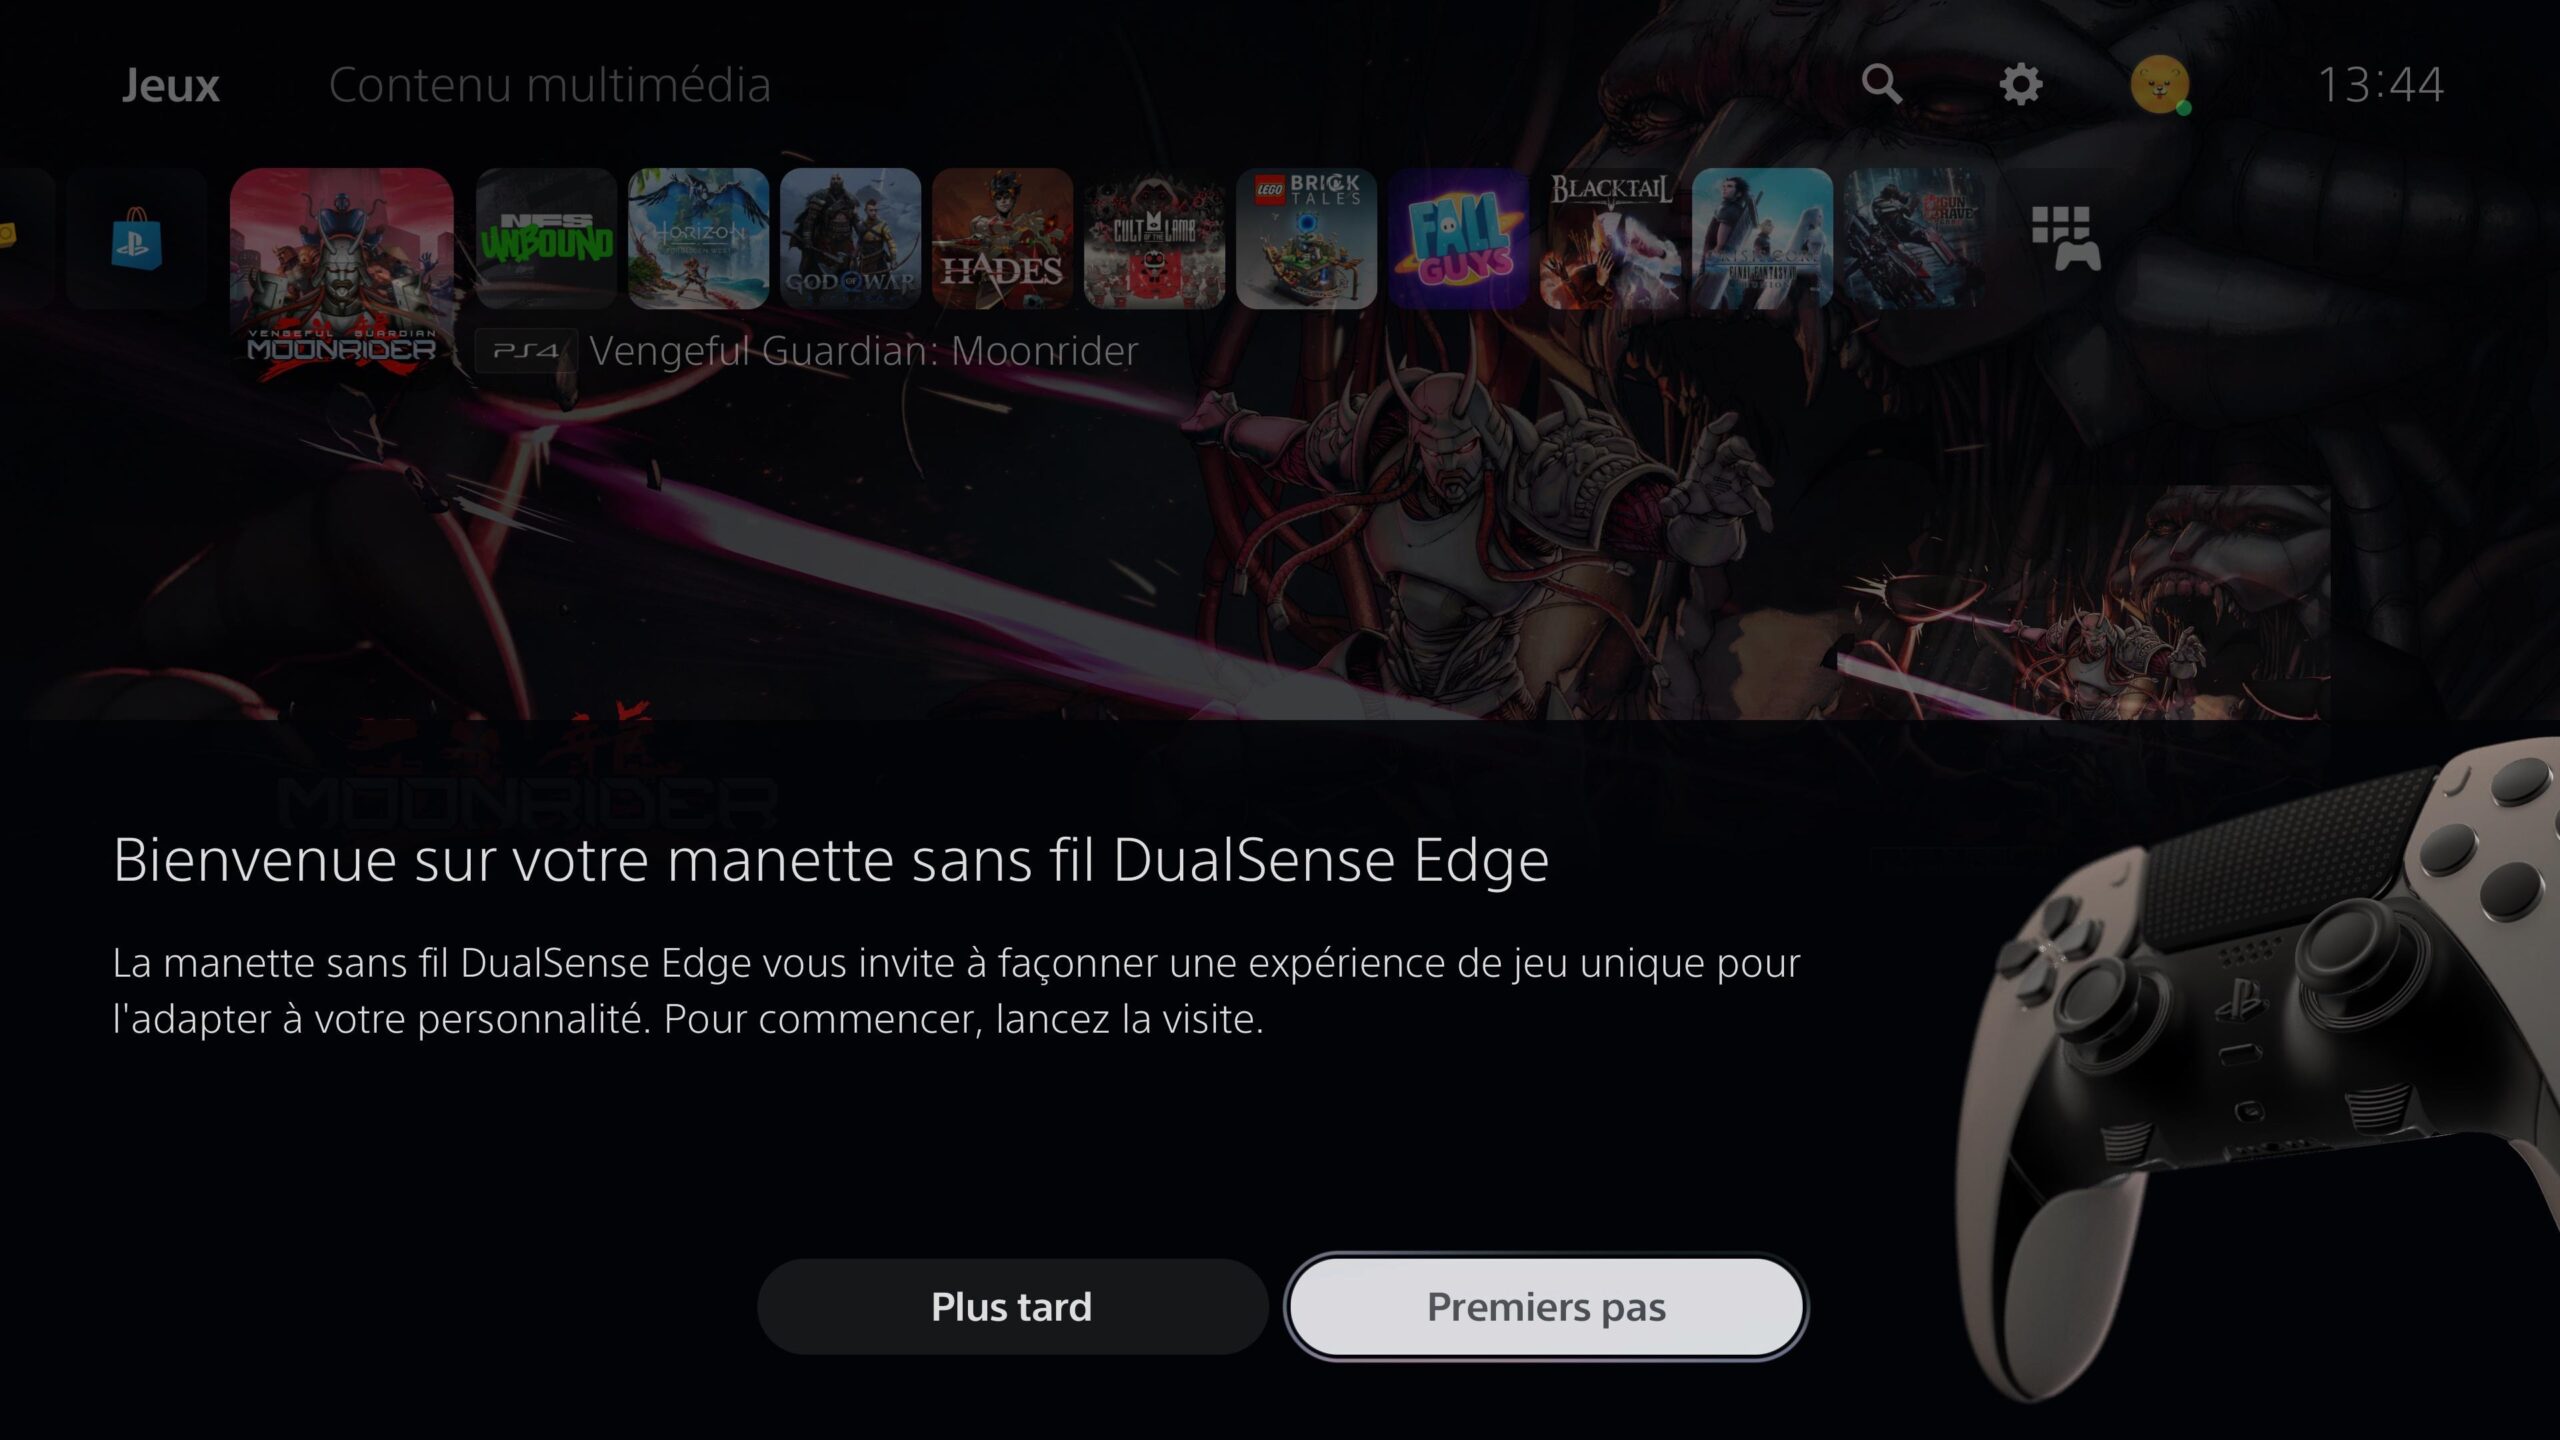 DualSense Edge : le prix de la manette élite coûte une demi-console